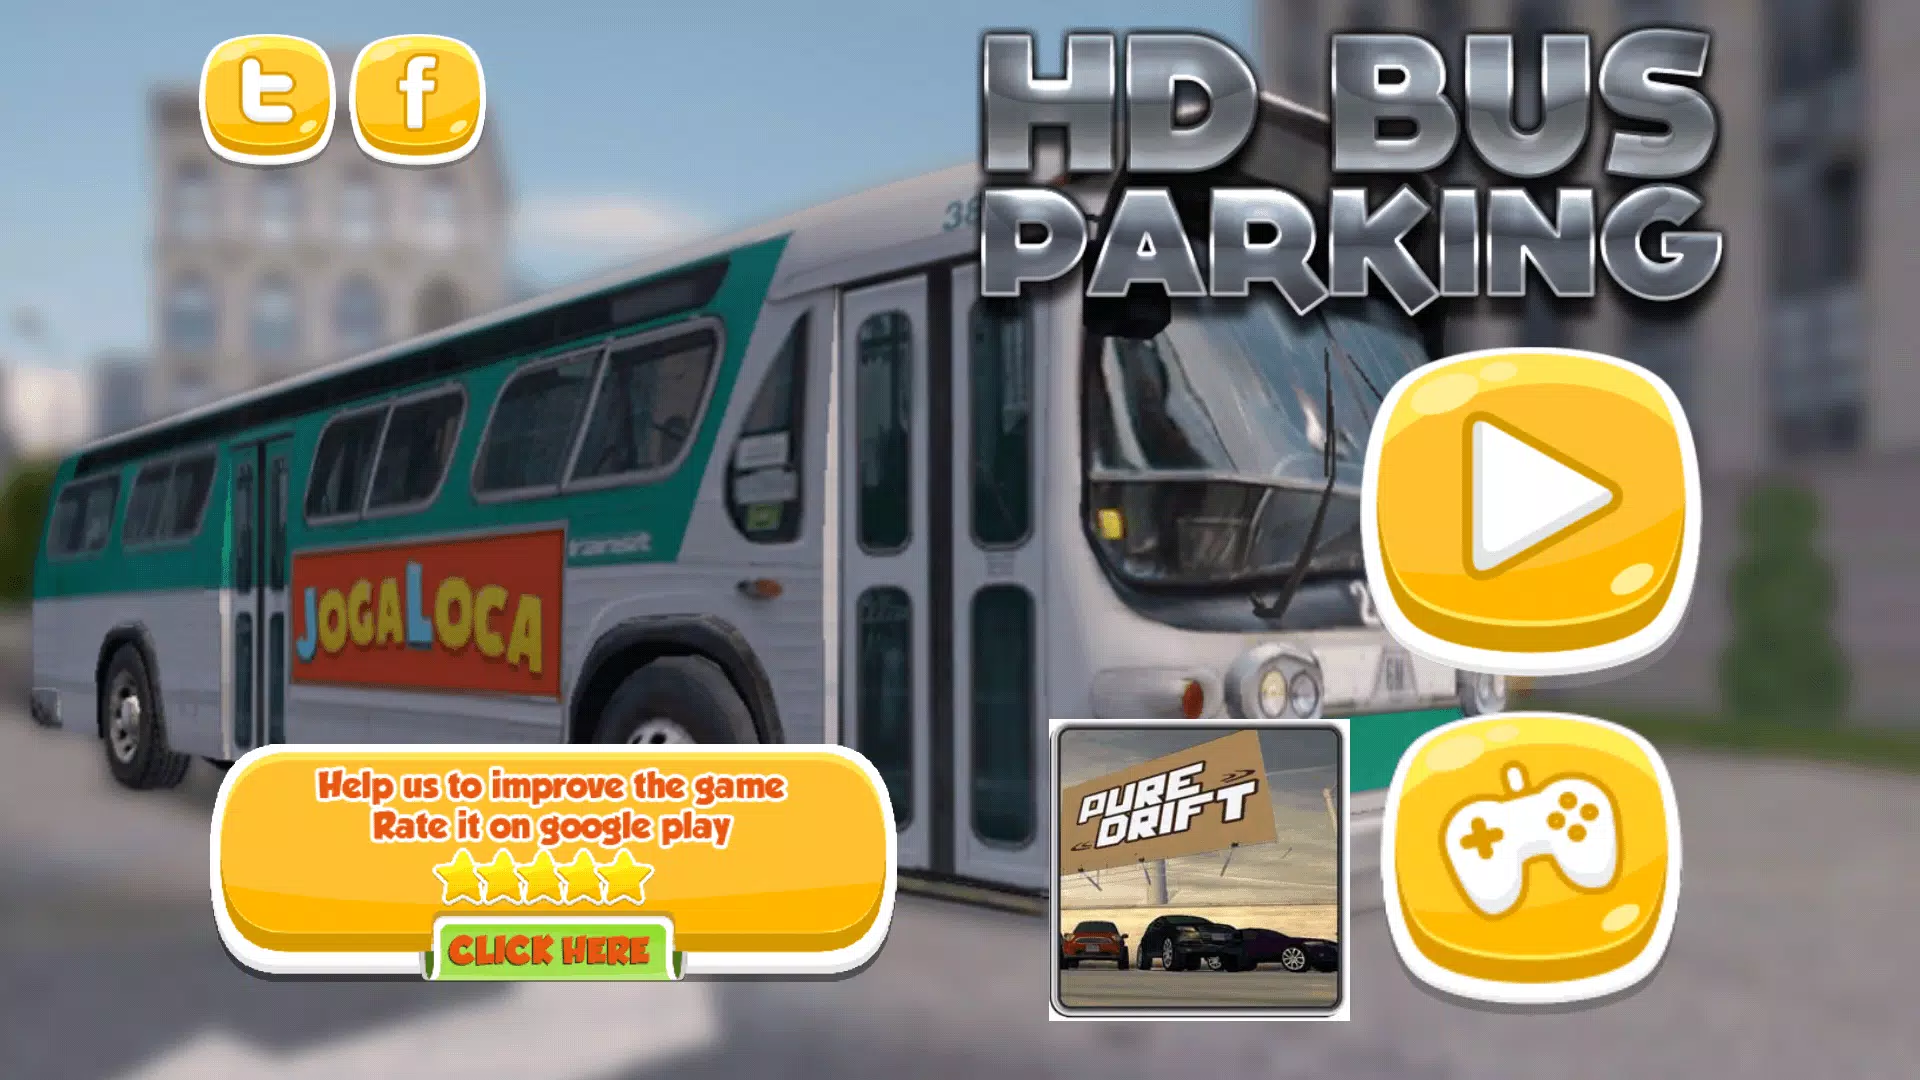 estacionamento rei – Apps no Google Play